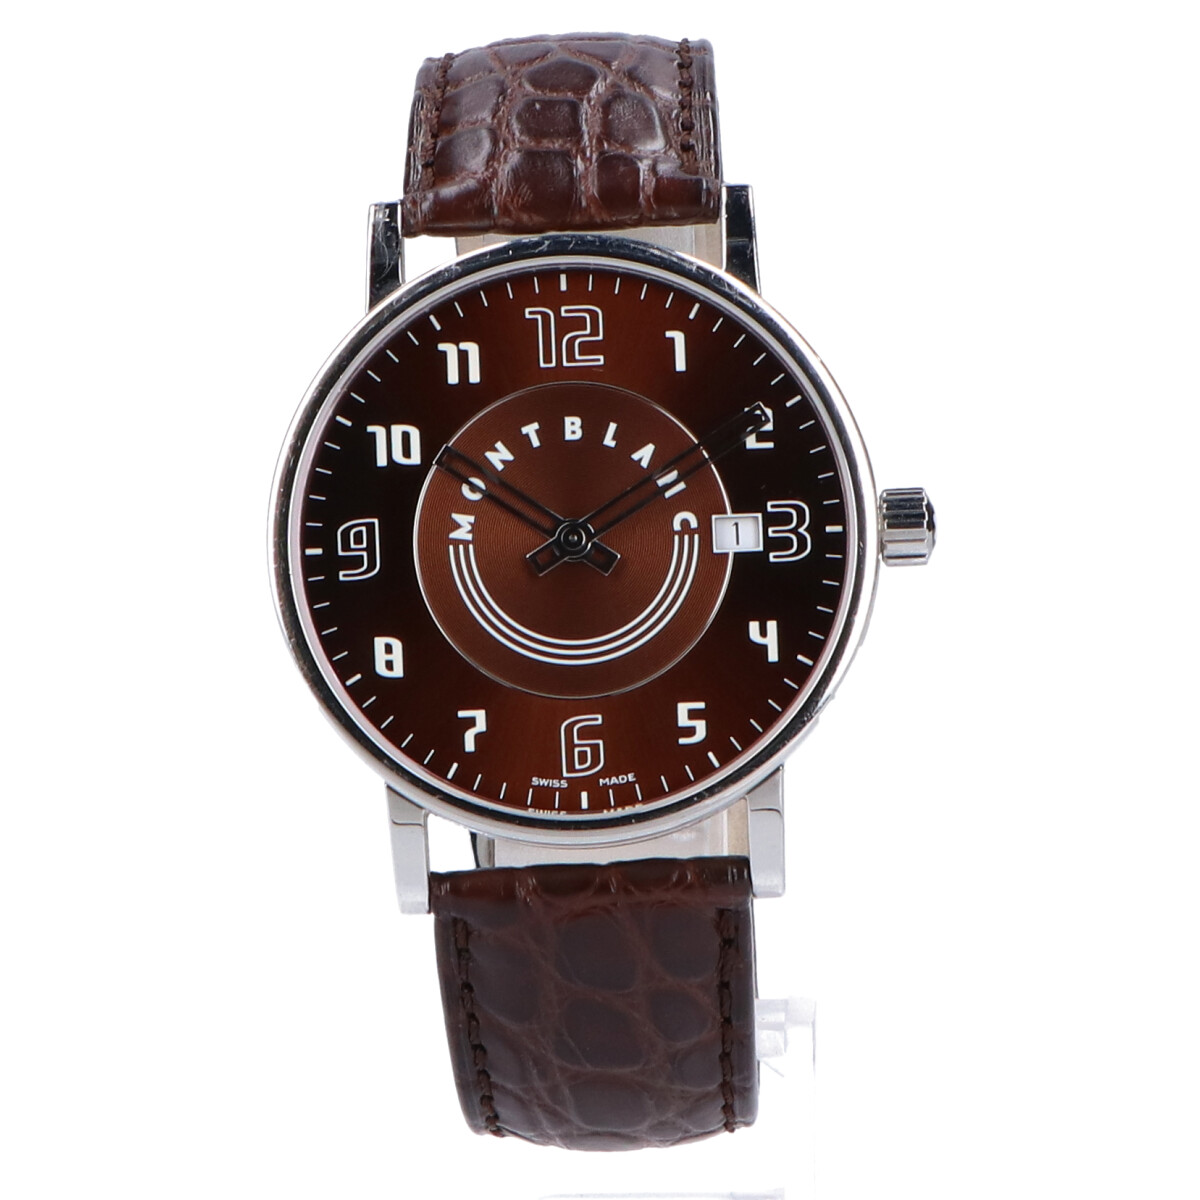 モンブランのSSケース デイト付き クオーツ腕時計 7078の買取実績です。